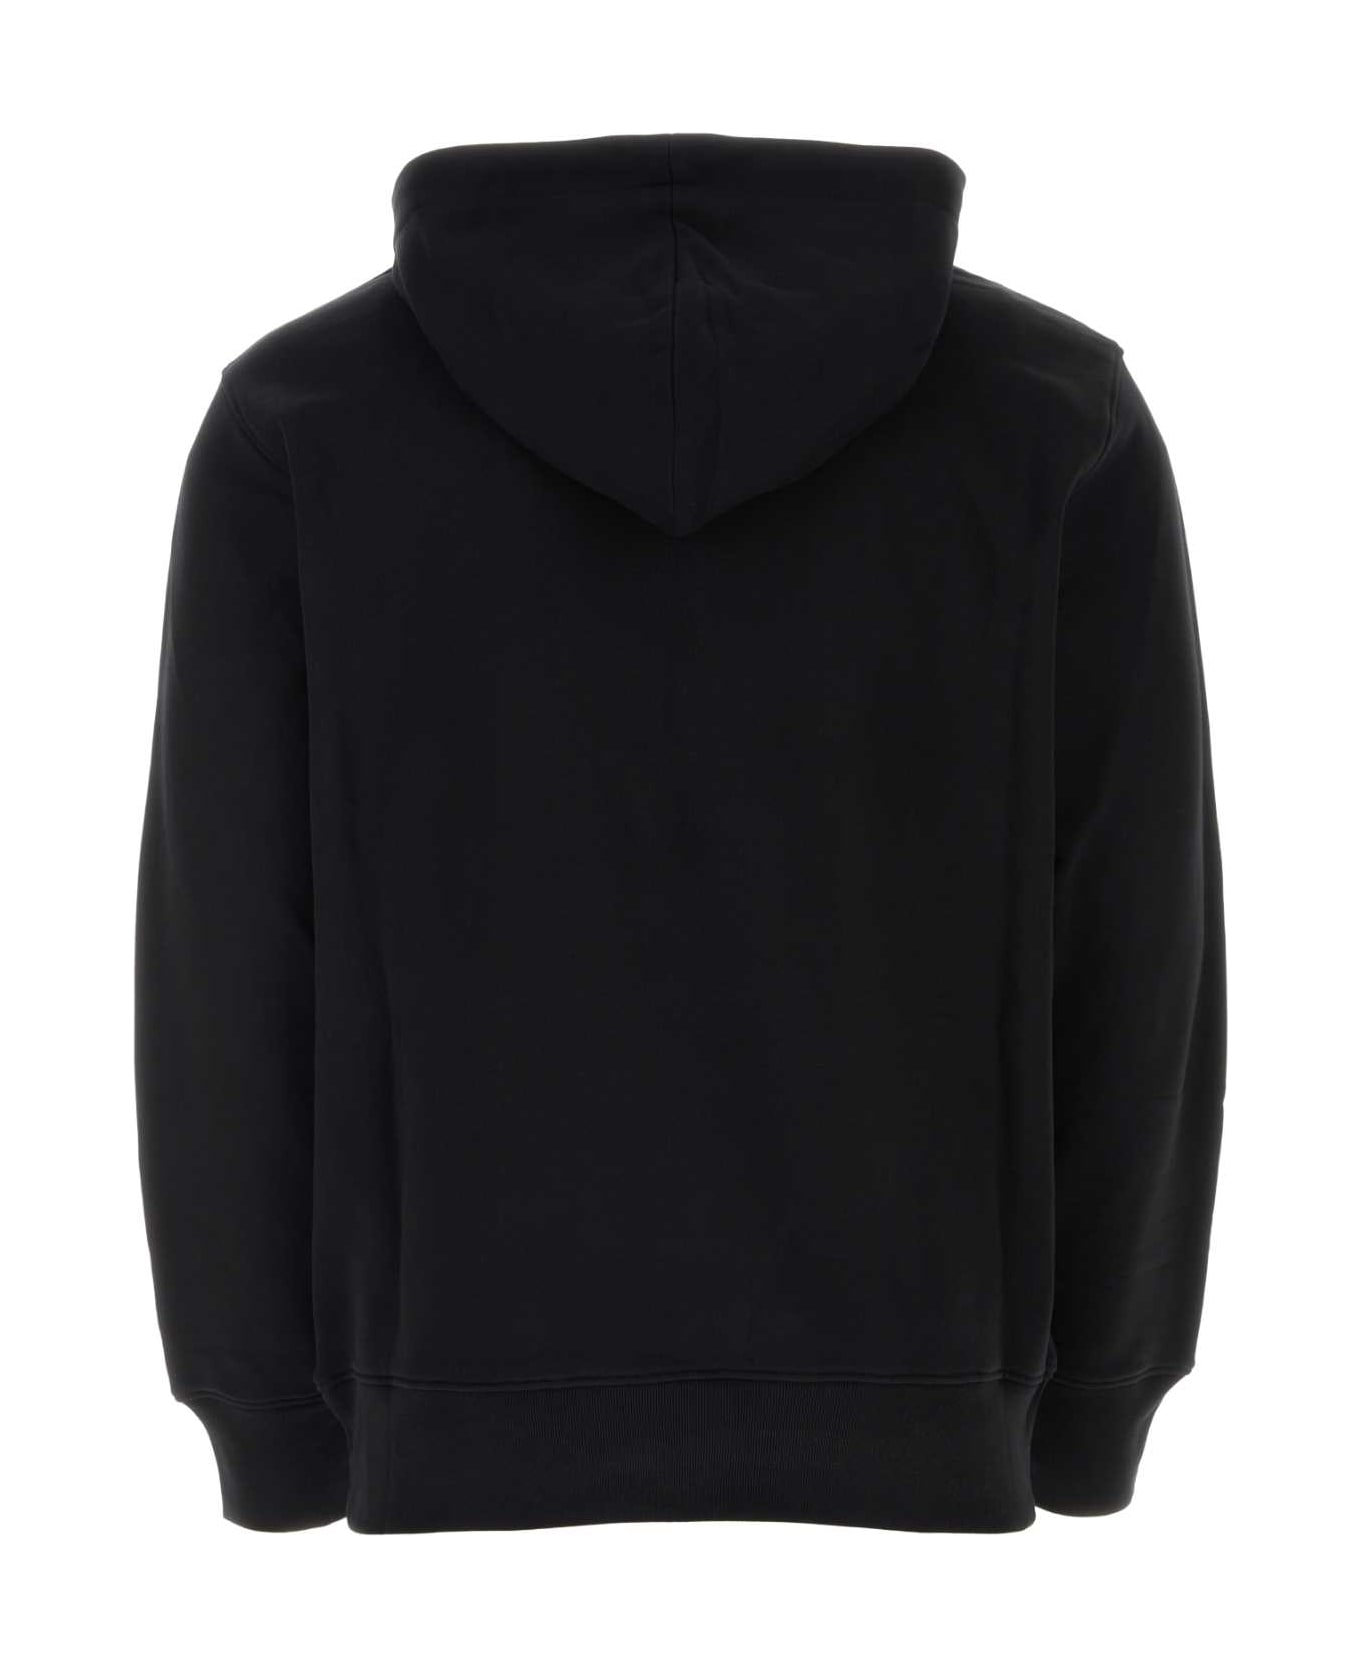 Moschino Black Cotton Sweatshirt - 1555